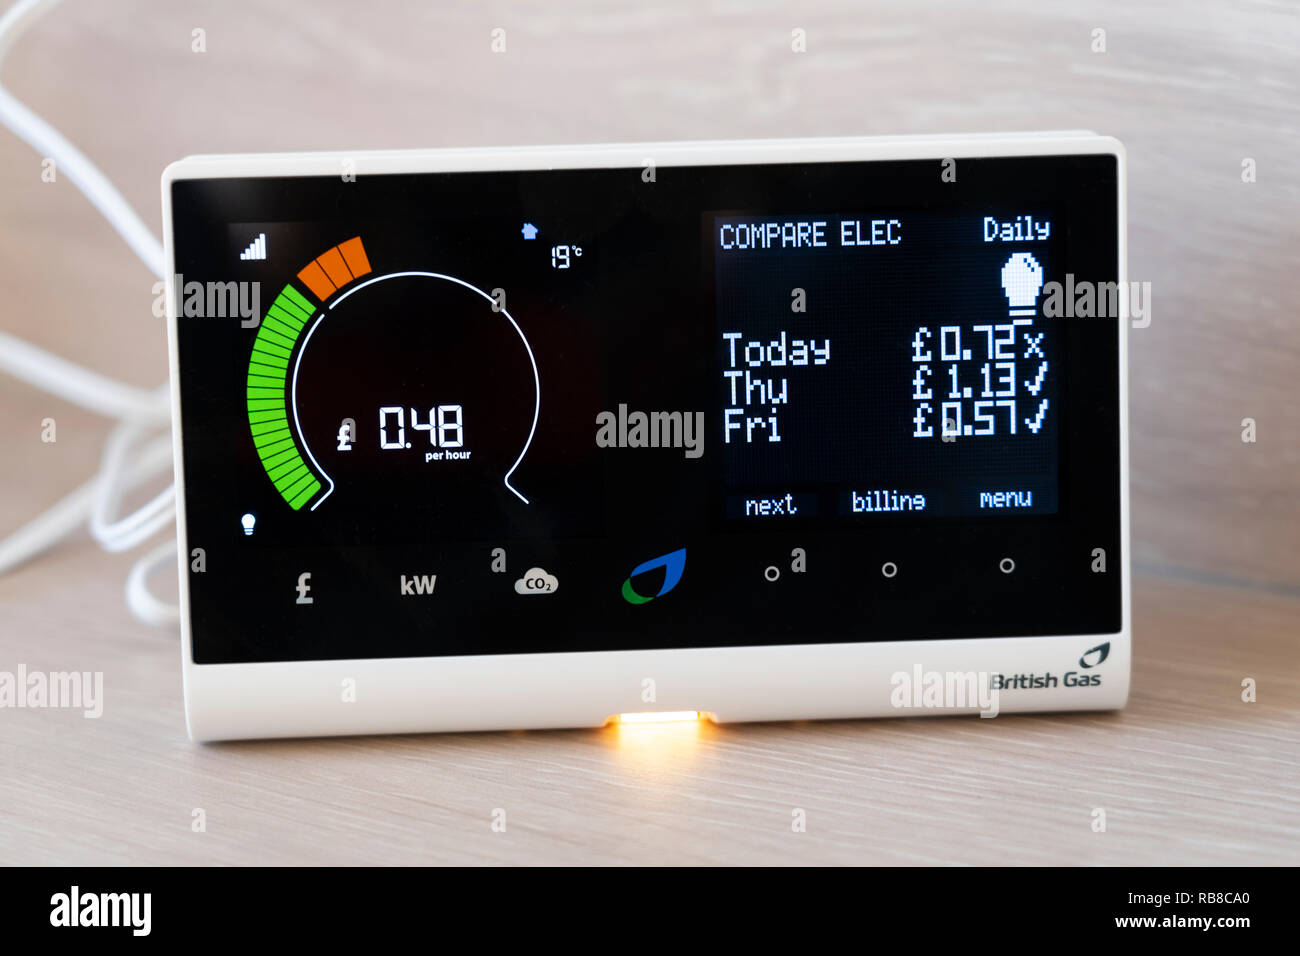 Un indicatore intelligente British gas in una casa che mostra il consumo di energia elettrica all'ora e che confronta con l'uso dei giorni precedenti. REGNO UNITO Foto Stock